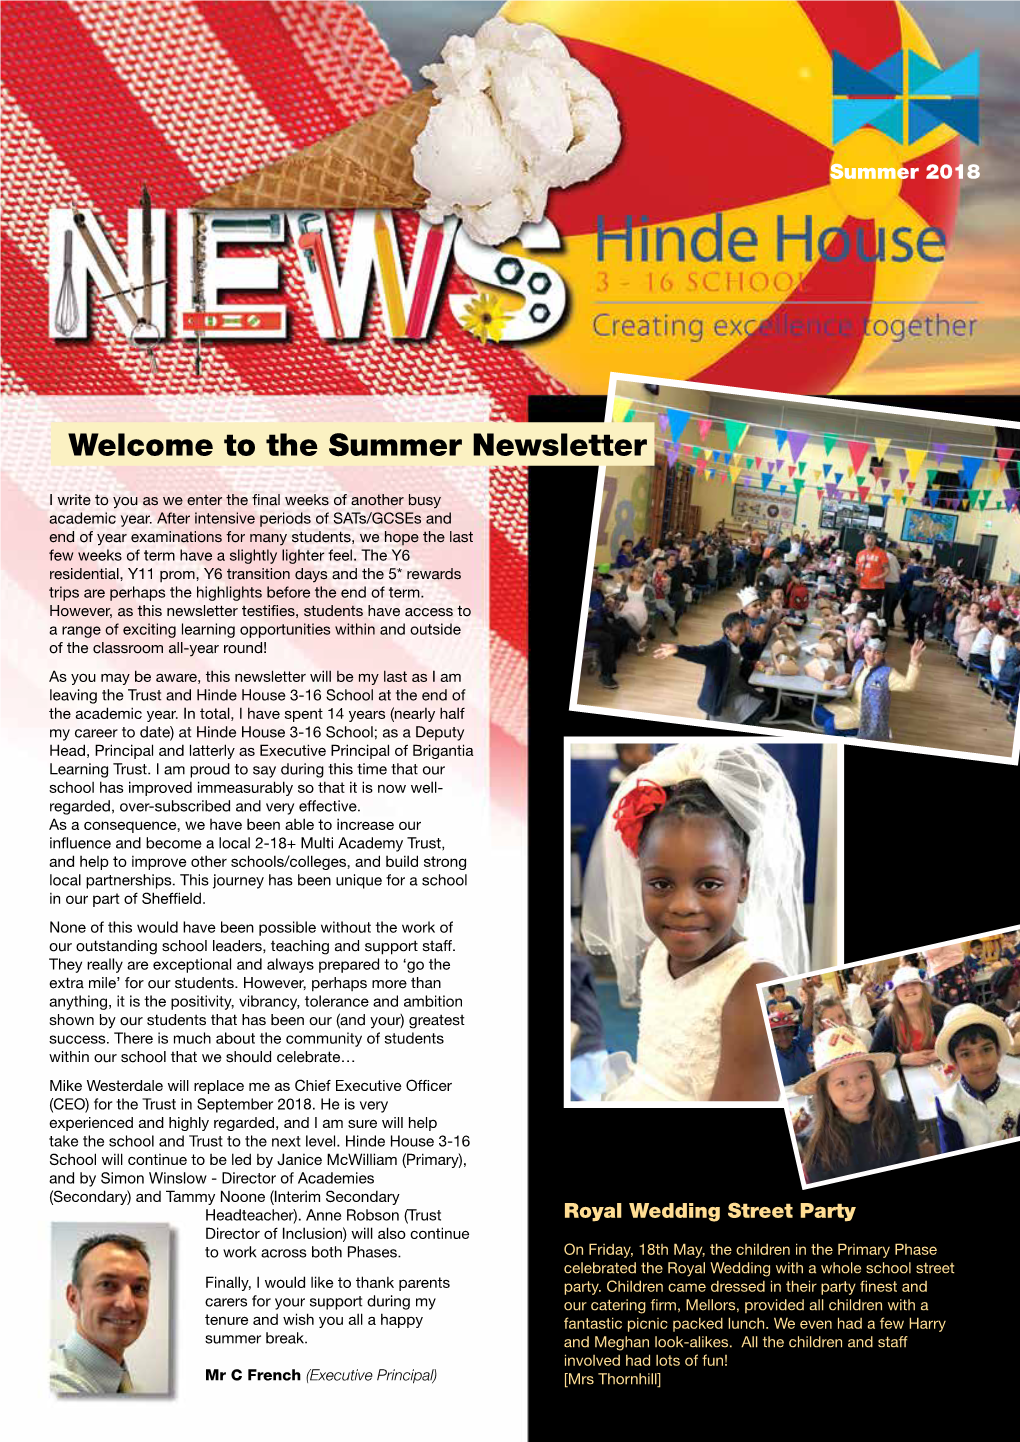 The Summer Newsletter